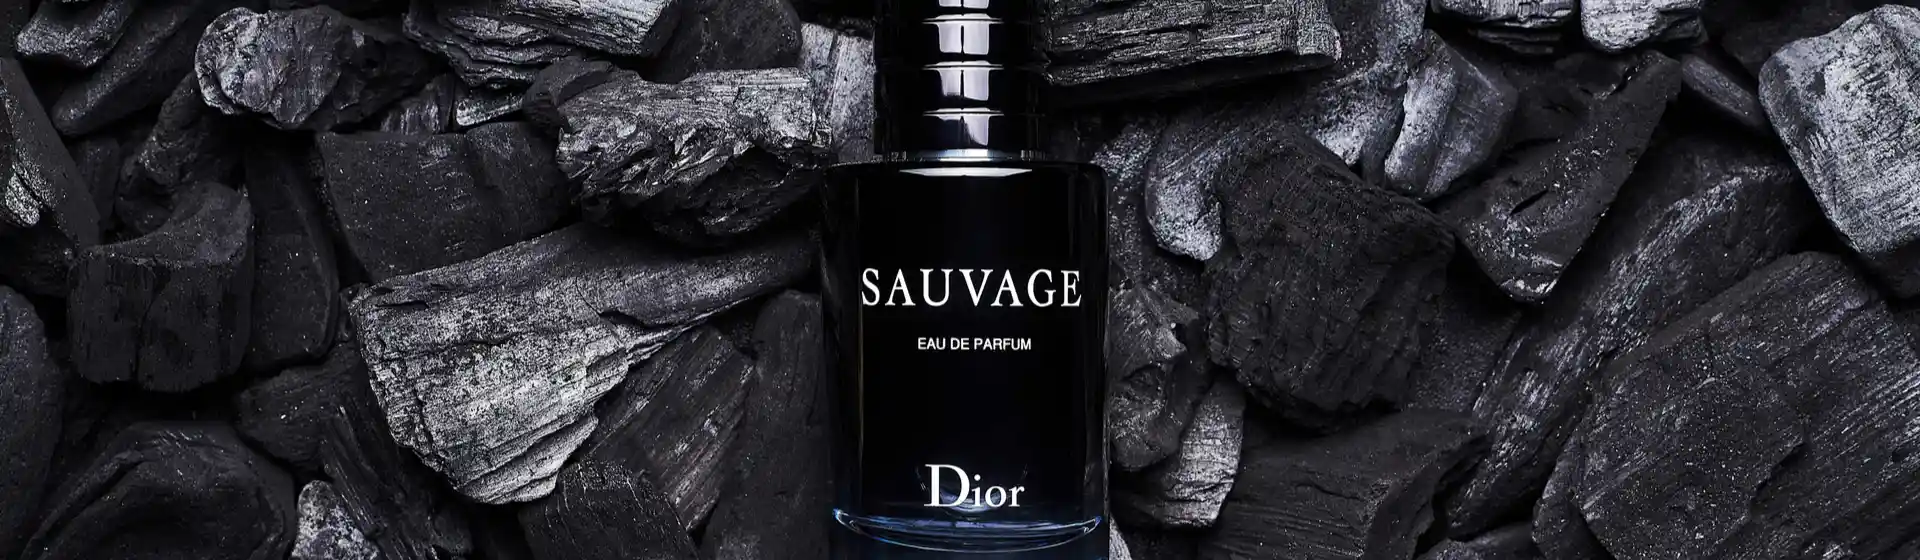 Capa do post: Sauvage Dior: conheça as opções da linha de fragrâncias masculina